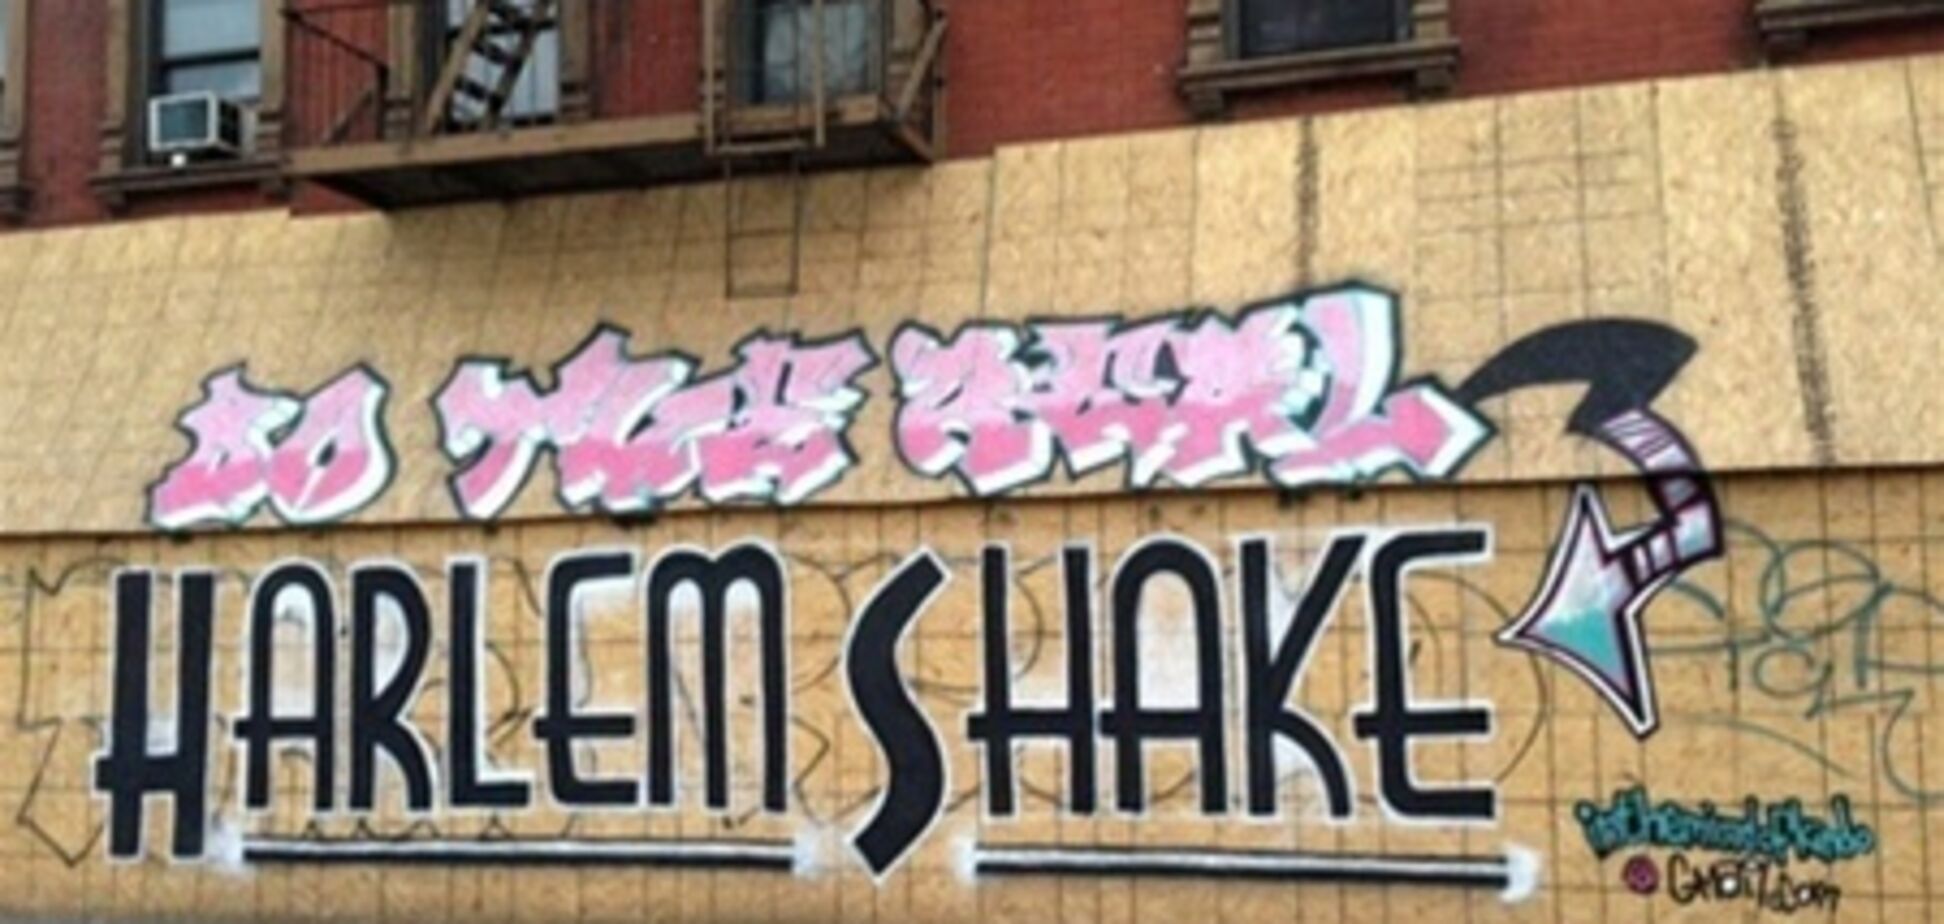 Японці станцювали 'Harlem Shake' в храмі